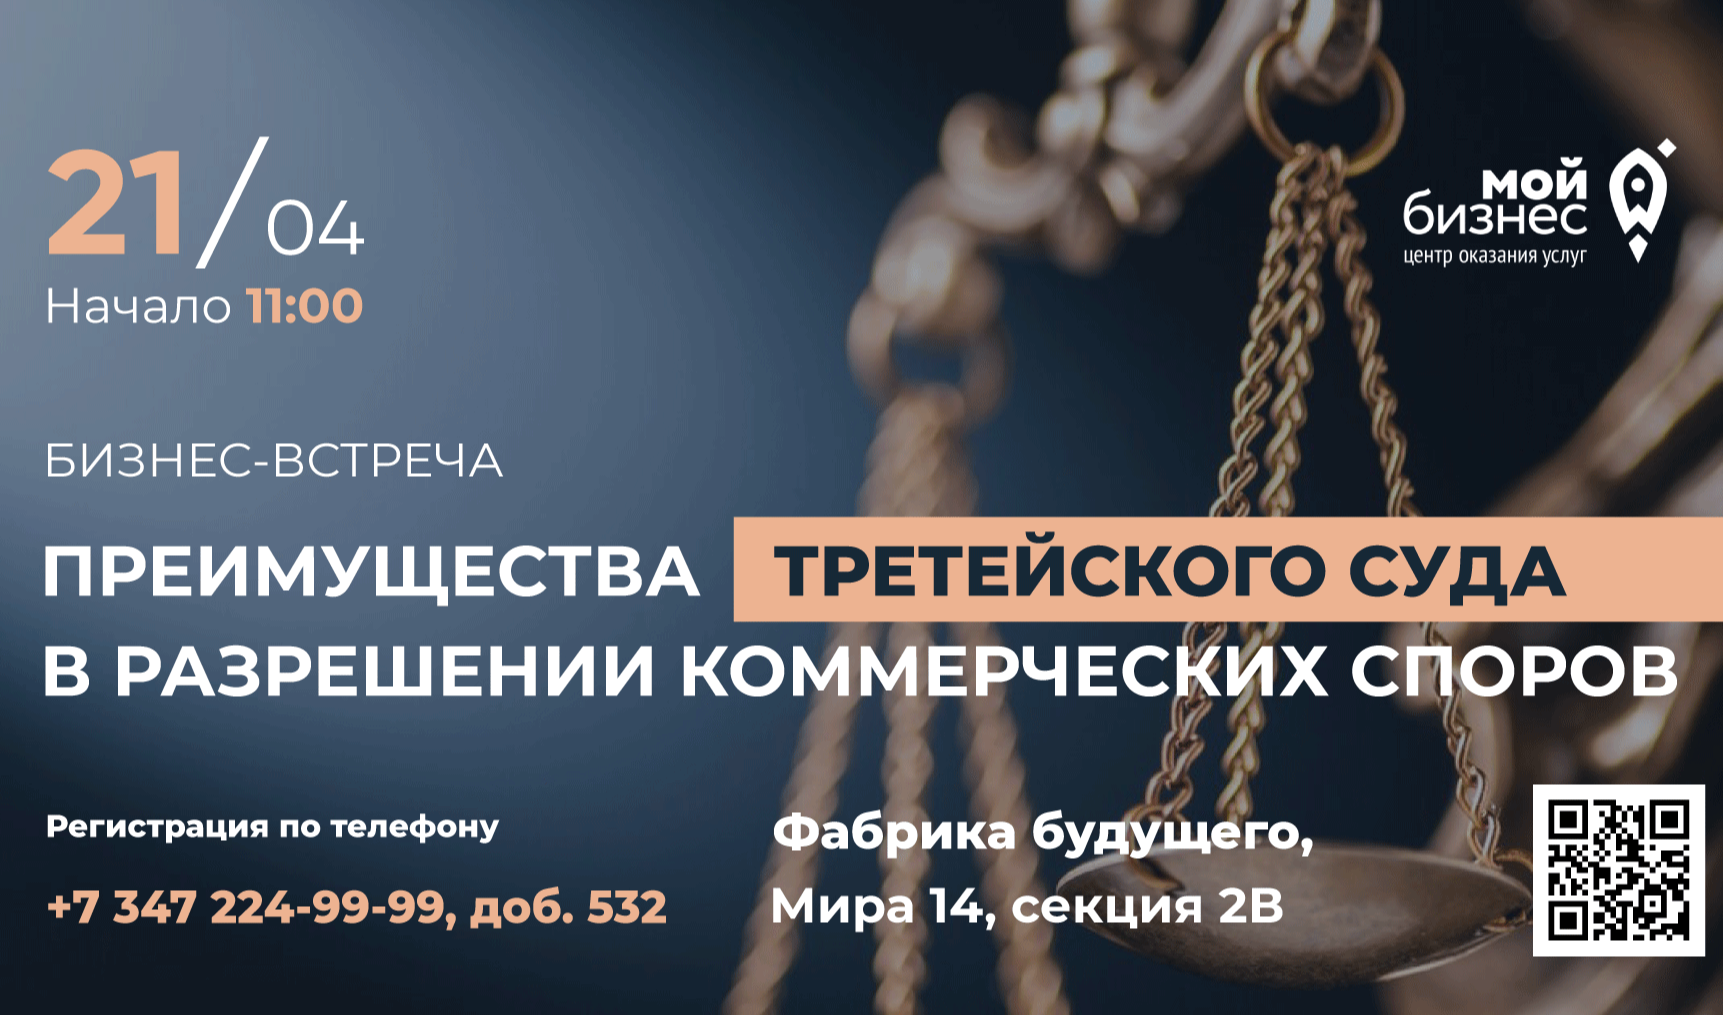 21 апреля в 11:00 при поддержке Центра "Мой бизнес" состоится мероприятие "Преимущества третейского суда в разрешении коммерческих споров".